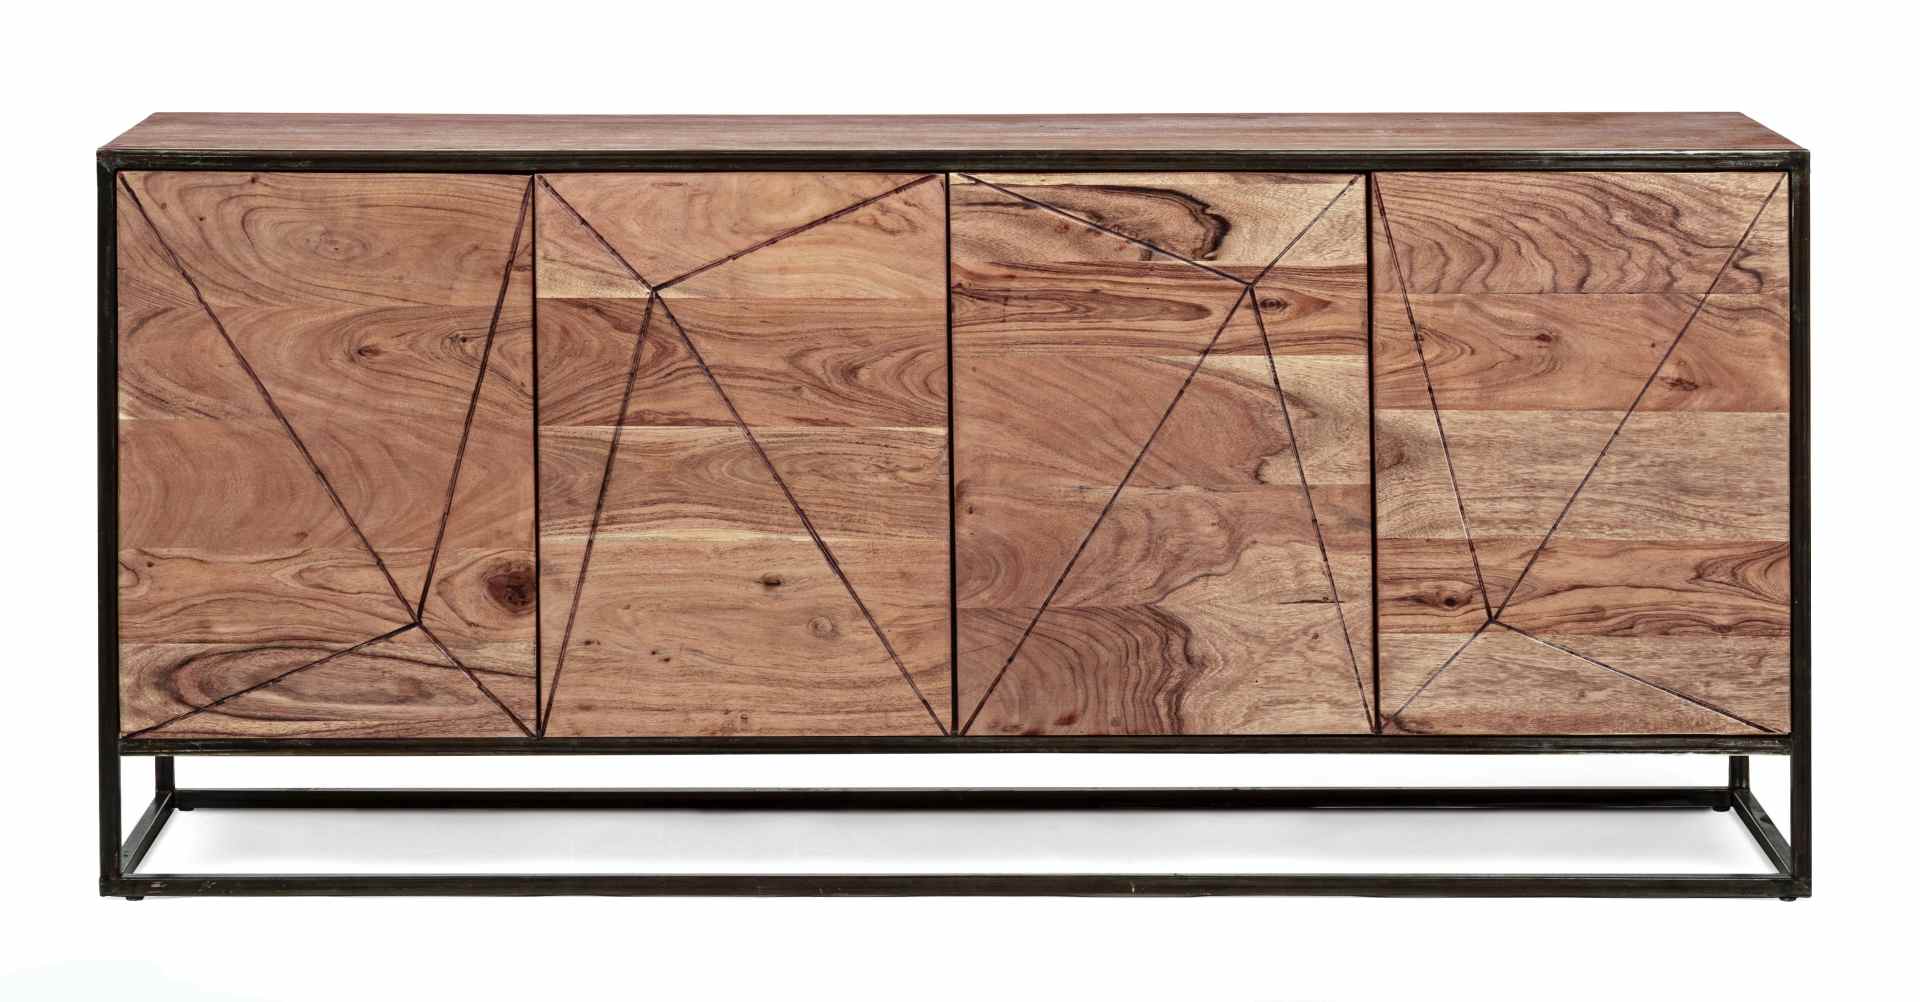 Das Sideboard Egon überzeugt mit seinem modernen Design. Gefertigt wurde es aus Akazien-Holz, welches einen natürlichen Farbton besitzt. Das Gestell ist aus Metall und hat eine schwarze Farbe. Das Sideboard verfügt über vier Türen. Die Breite beträgt 175 